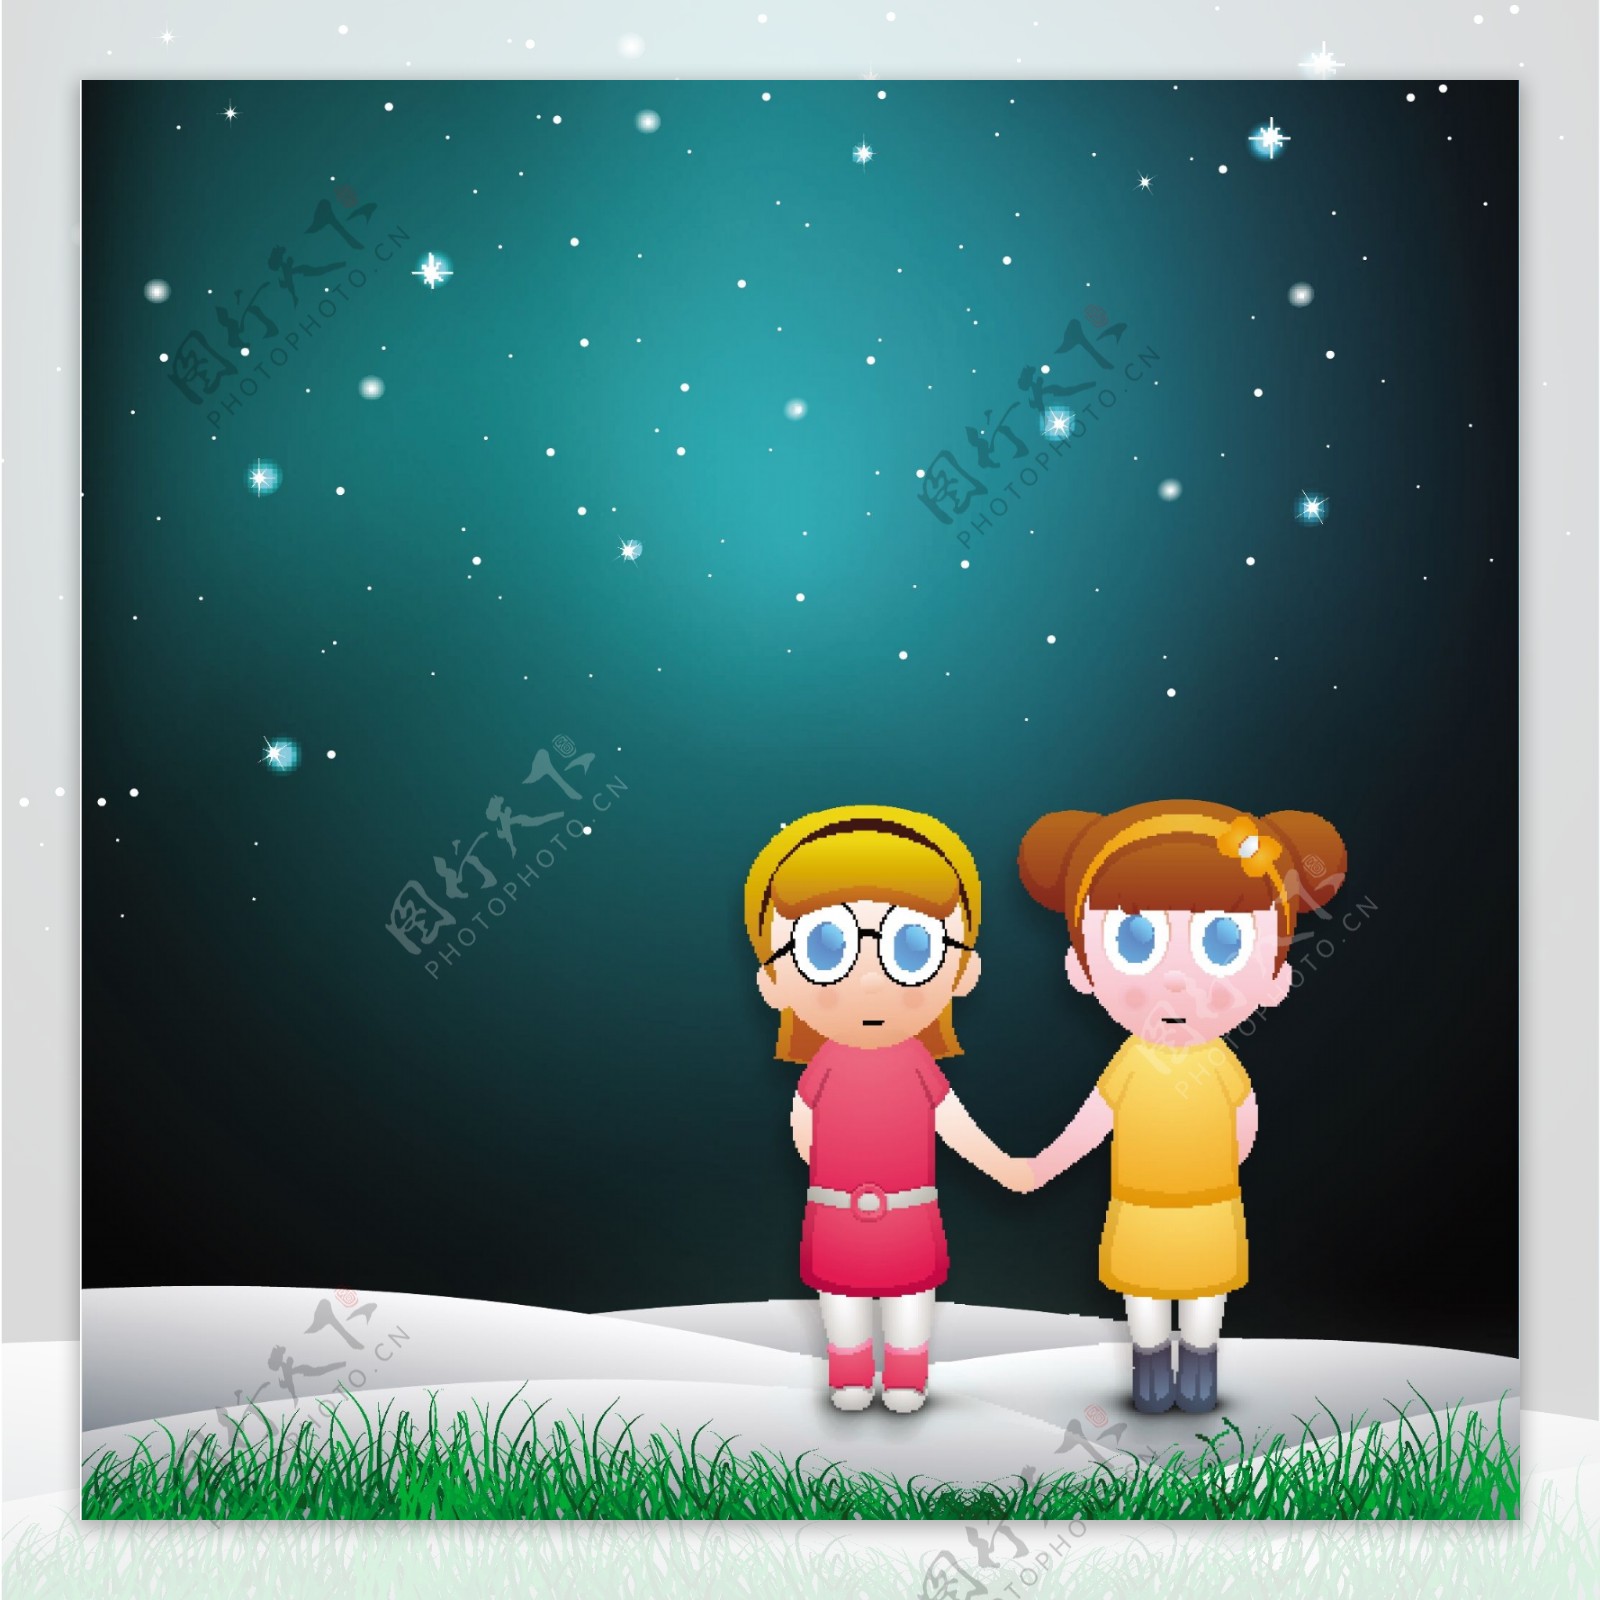 快乐友谊日背景与可爱的小女孩在晚上握手